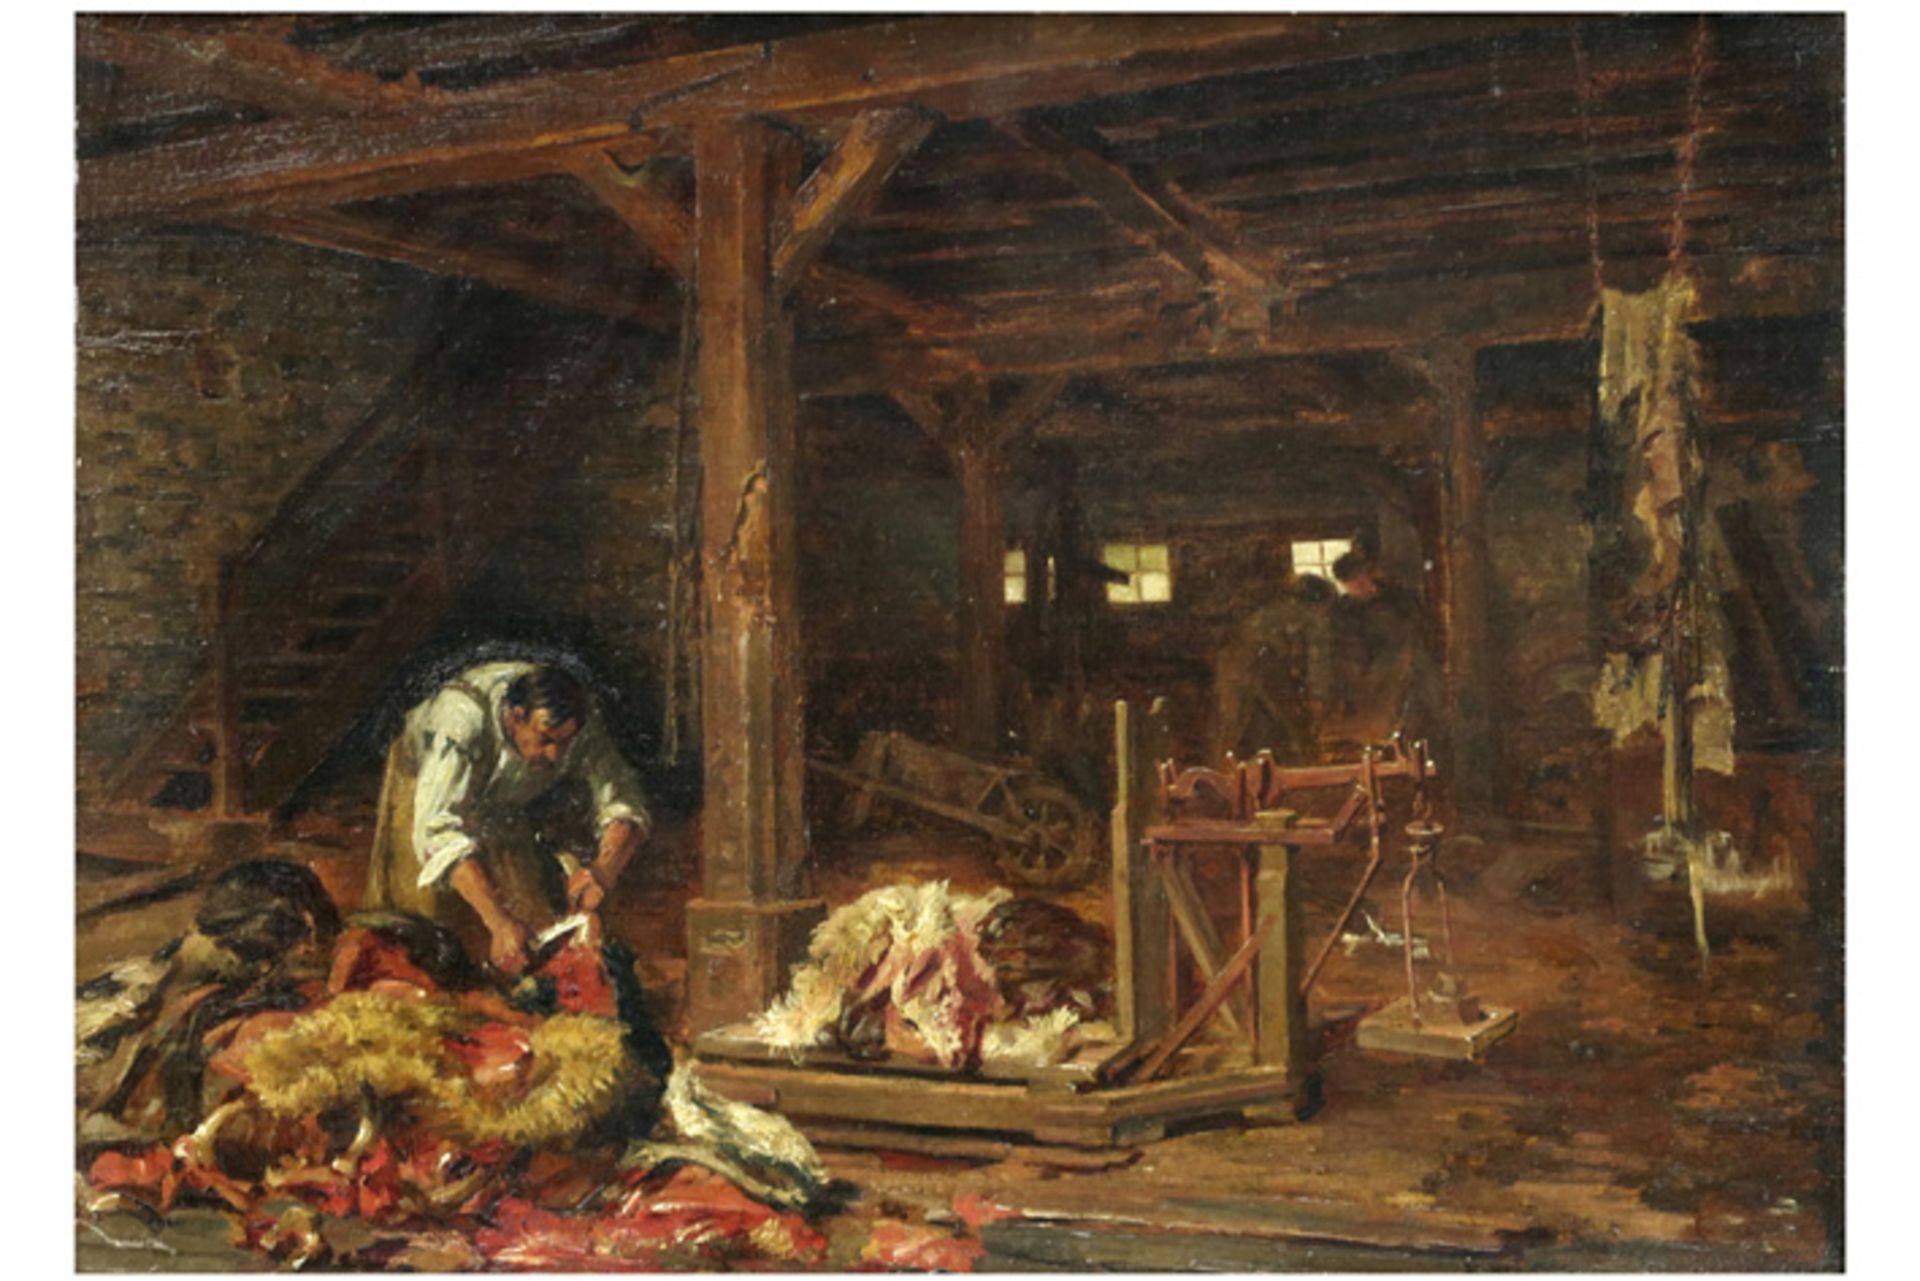 BLANC GARIN ERNEST (1843 - 1916) olieverfschilderij op paneel : "Slager in een stal" - 40 x 55||19th